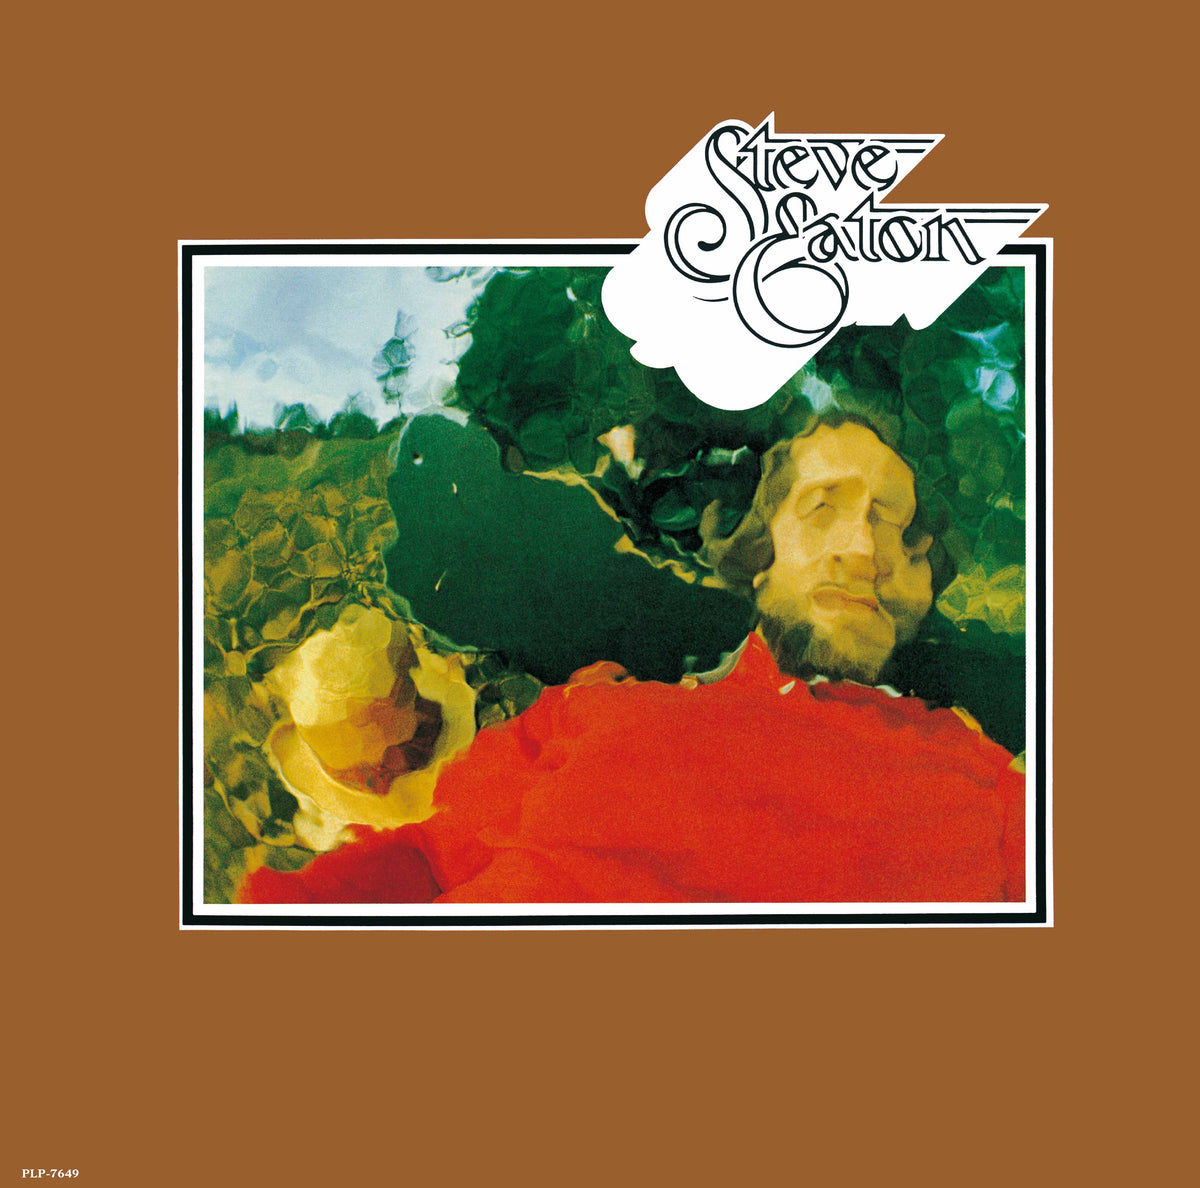 STEVE EATON『Steve Eaton』LP – P-VINE OFFICIAL SHOP